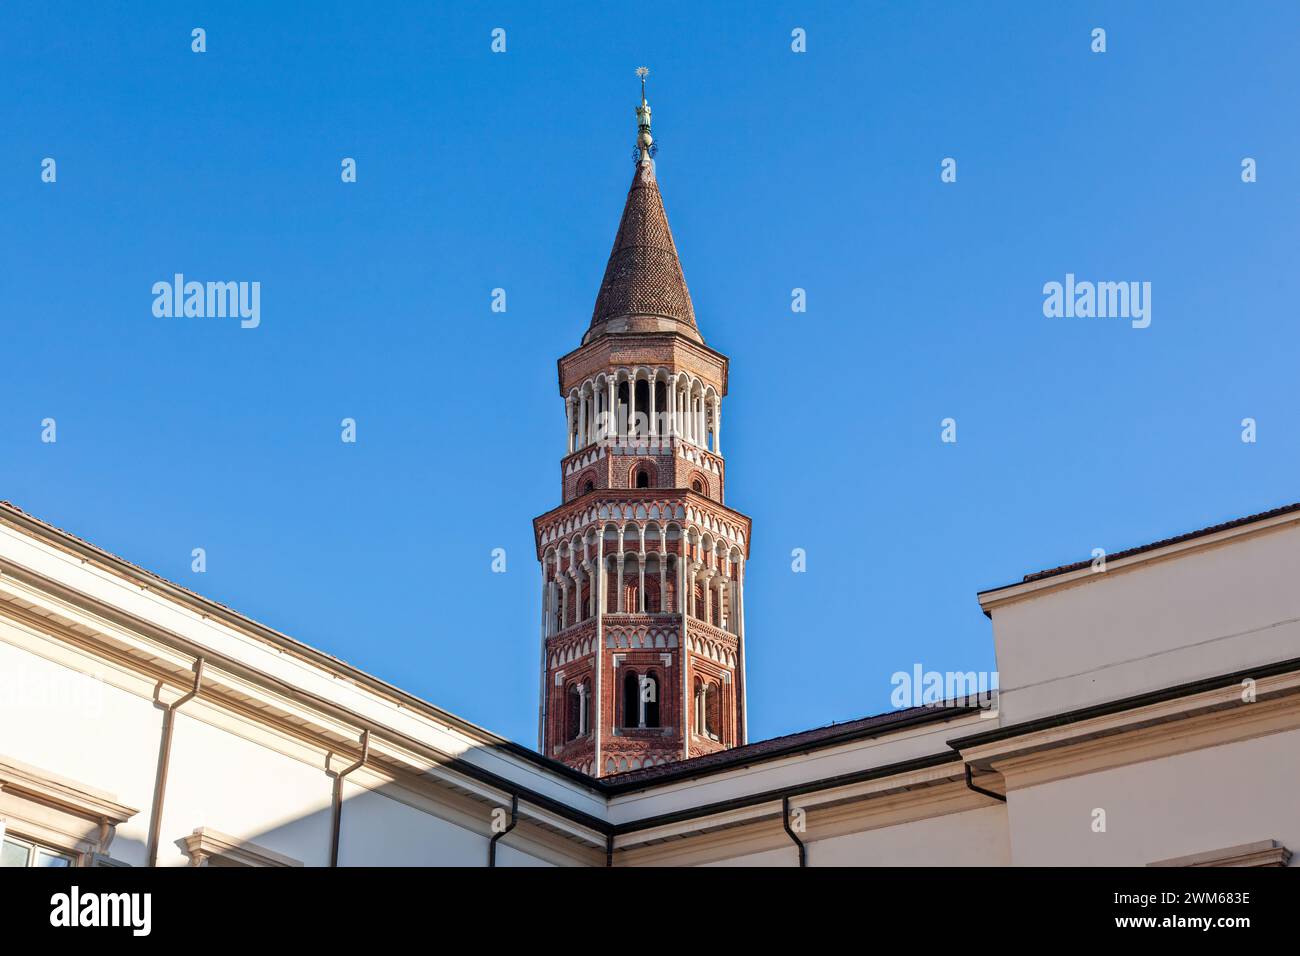 Le clocher octogonal de l'église catholique de San Gottardo dans le quartier Navigli de Milan, dans le nord de l'Italie, Europe. Banque D'Images